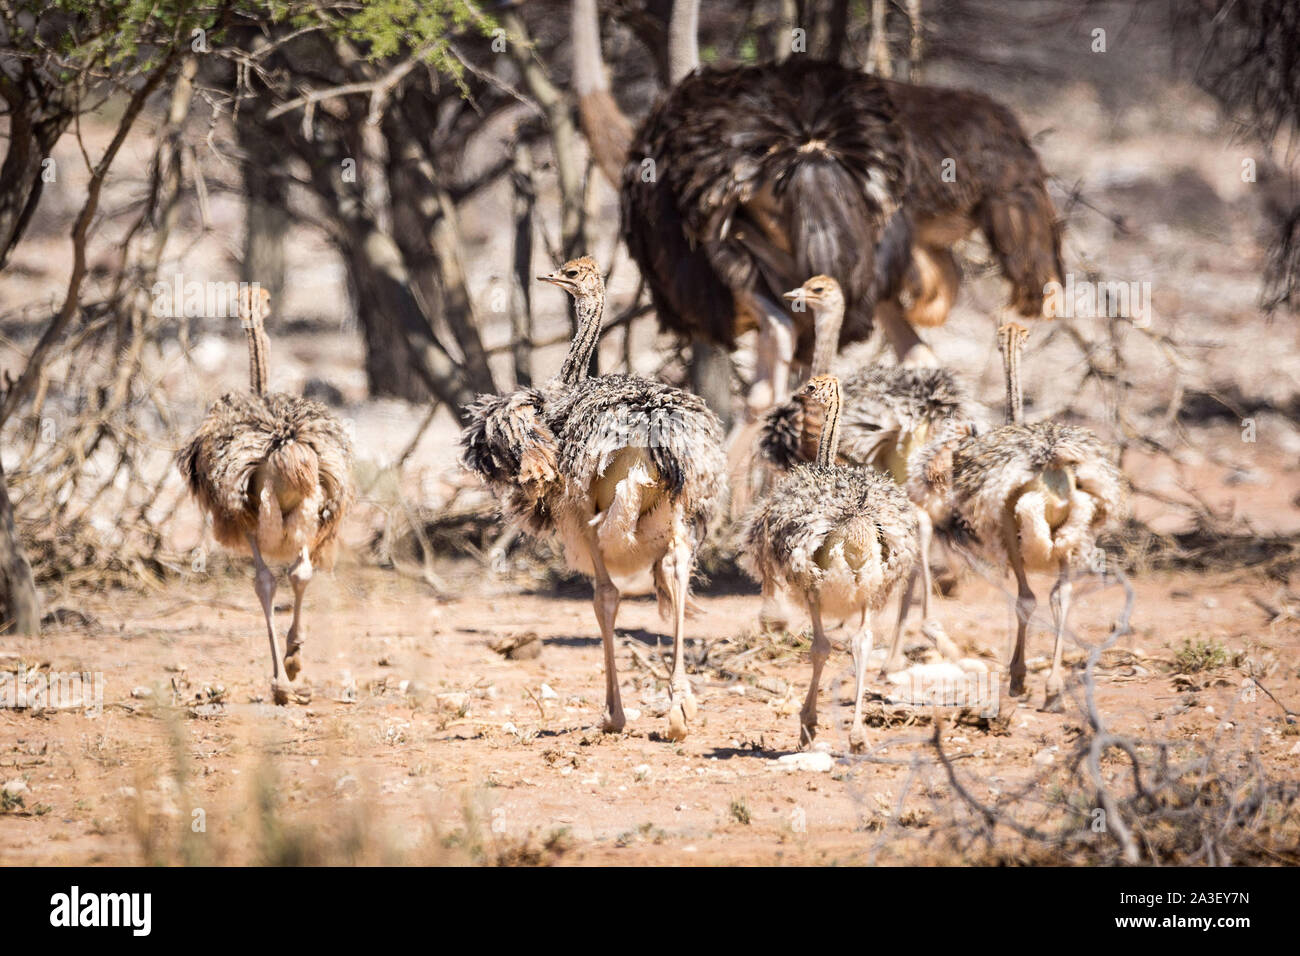 Une autruche famille avec leur progéniture marche à travers un paysage stérile, la Namibie, l'Afrique Banque D'Images